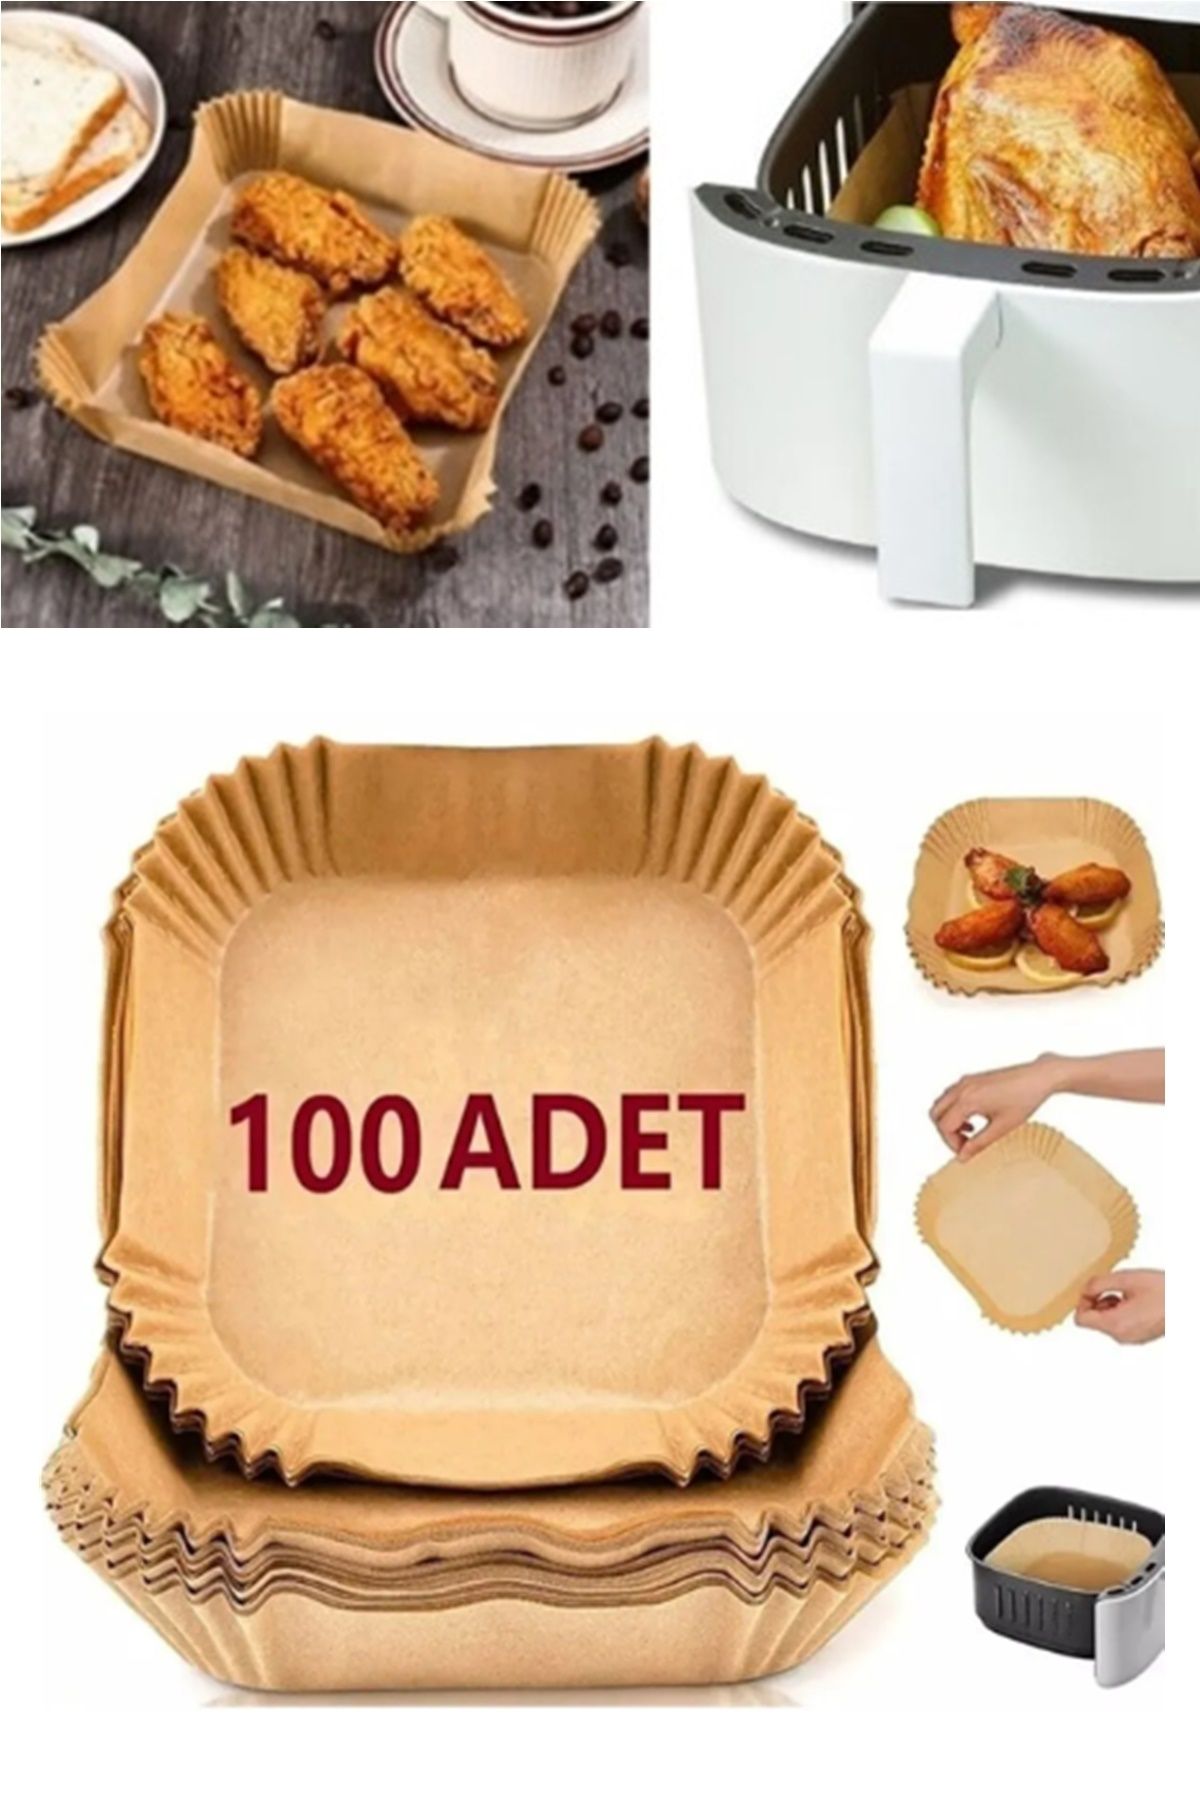 Kitchen Beauty Airfryer Pişirme Kağıdı 100 Adet Hava Fritözü Kare Model Pişirme Kağıdı Airfryer Yağsız Firitöz